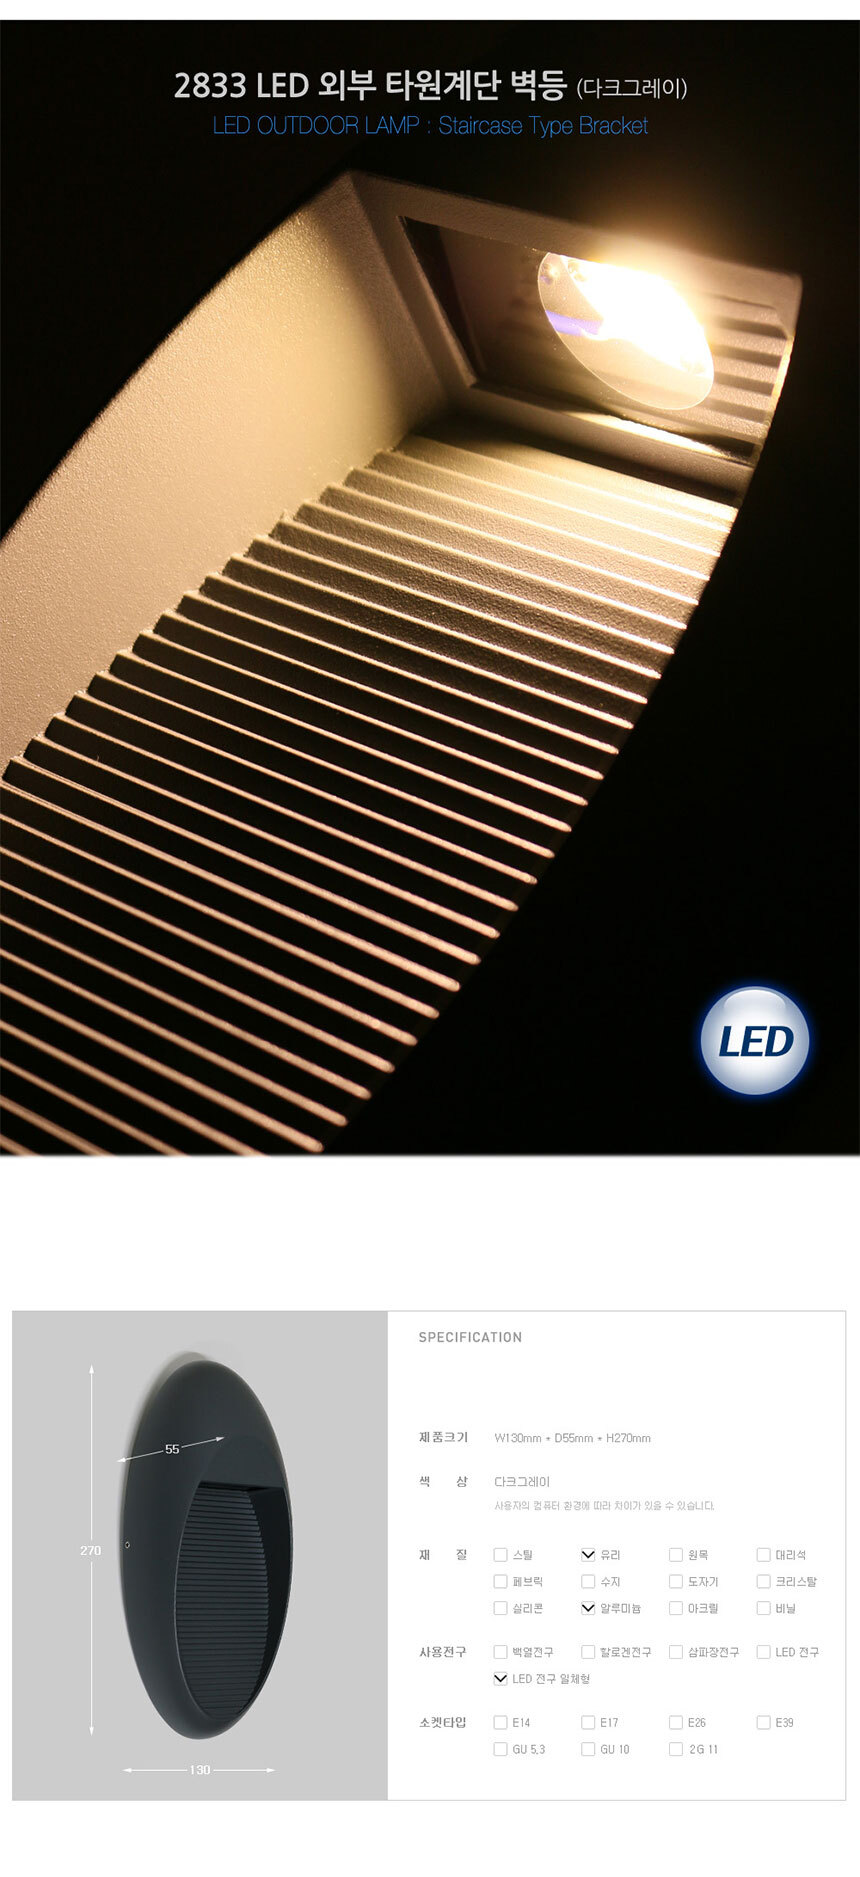 2833 LED 외부 타원계단 벽등 (다크그레이)
제품크기 W130mm * D55mm * H270mm
색상 다크그레이
재질 유리 알루미늄
사용전구 LED 전구 일체형

